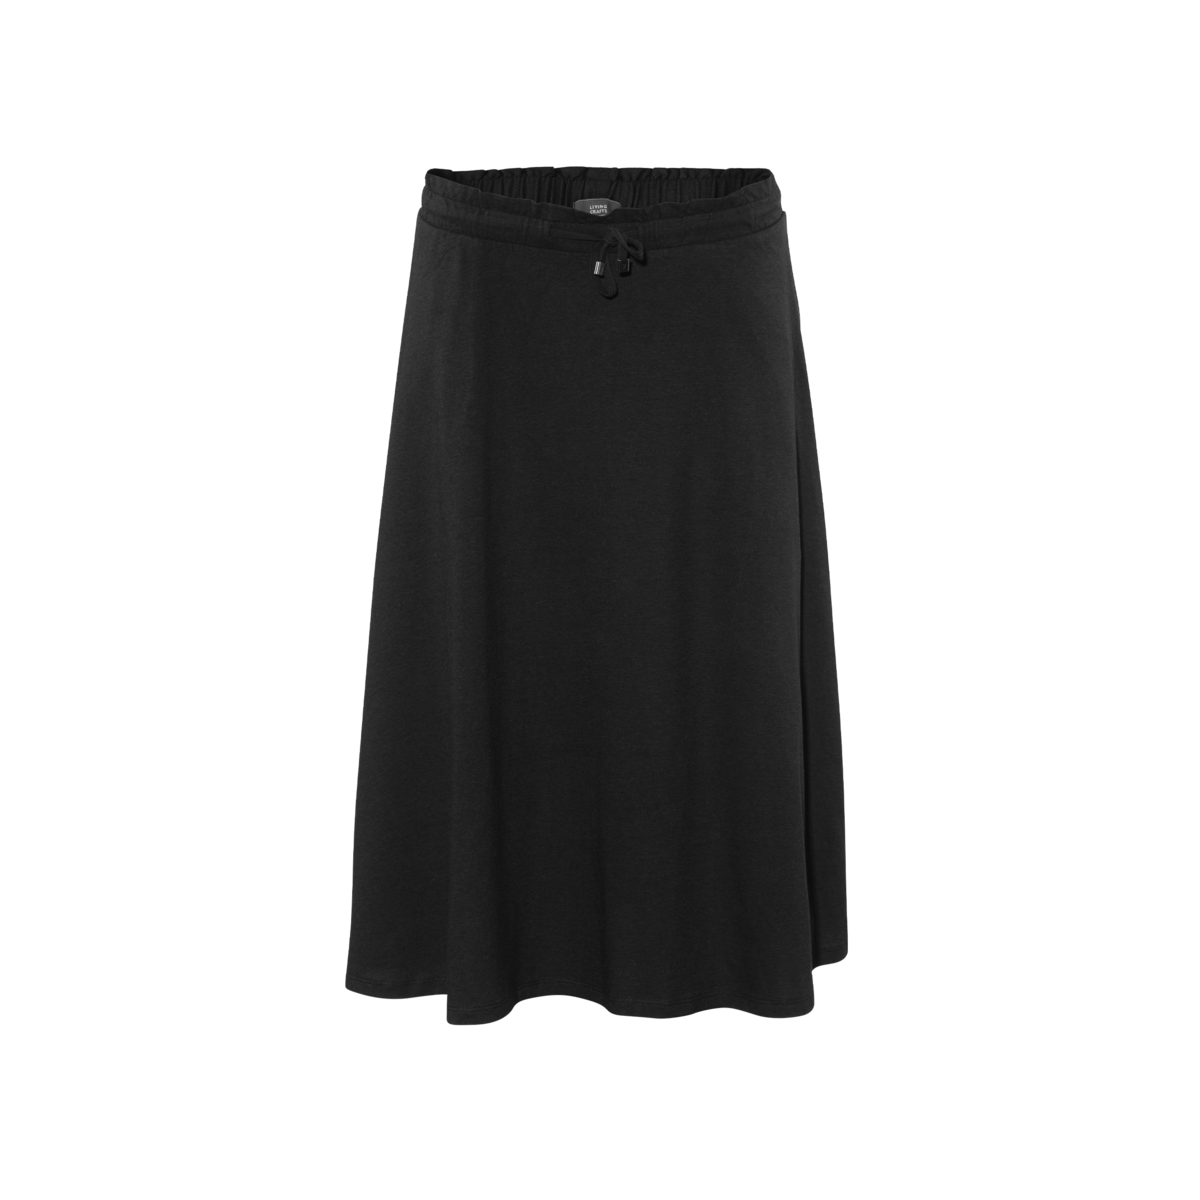 Black Skirt, ISSY